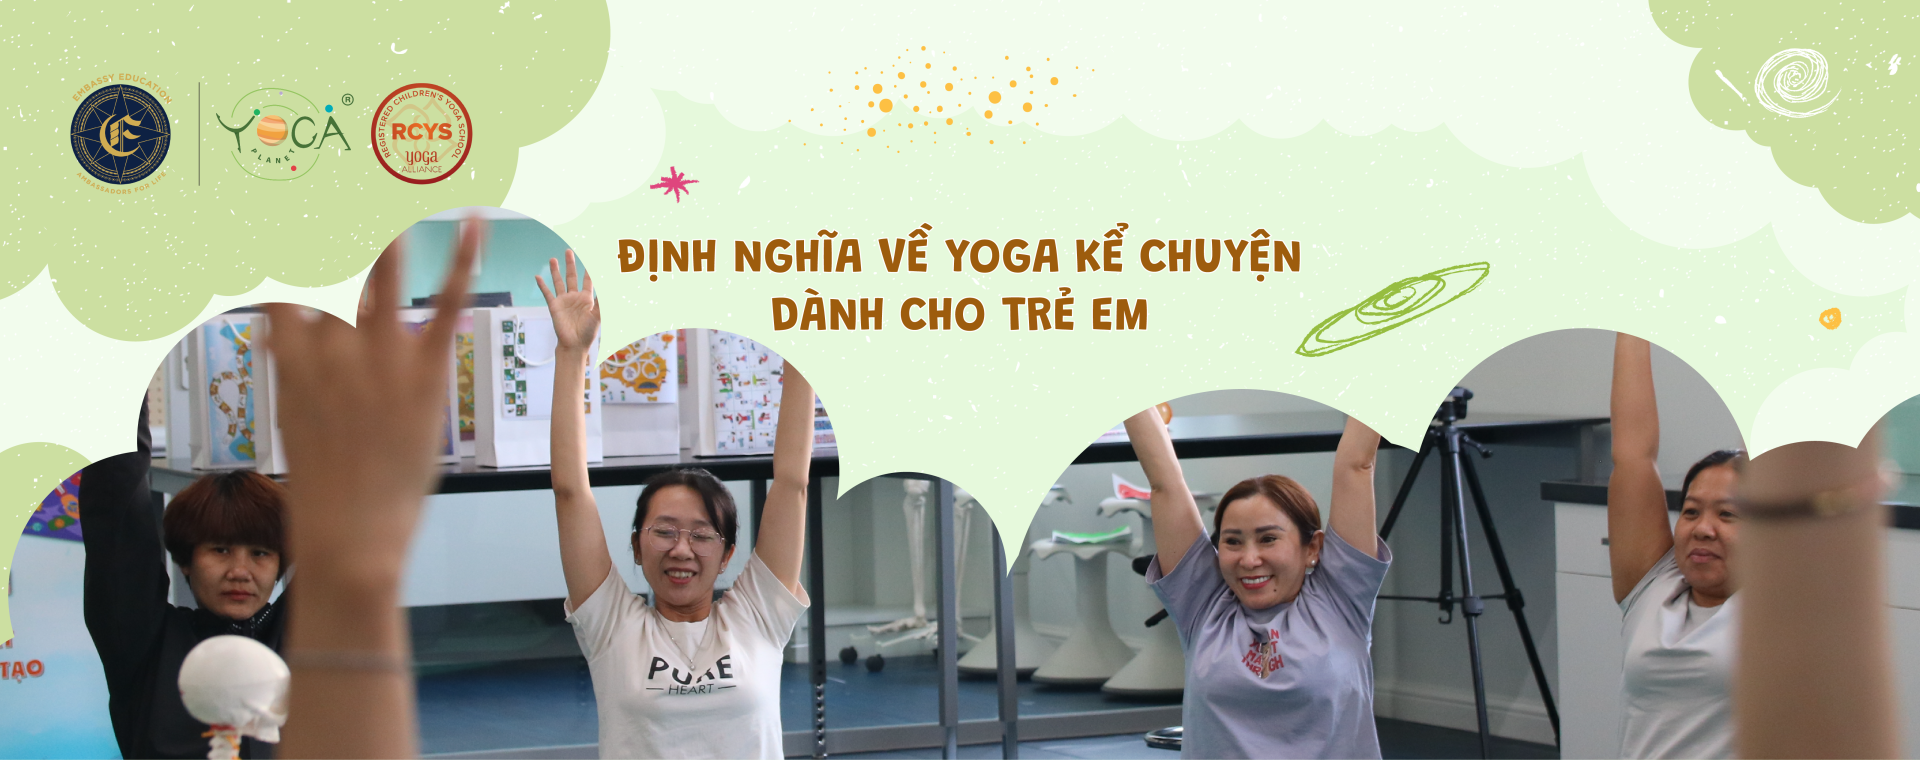 Khóa Đào tạo Giáo viên Yoga Kể Chuyện dành cho Trẻ em thành phố Hồ Chí Minh cùng các chuyên gia ​